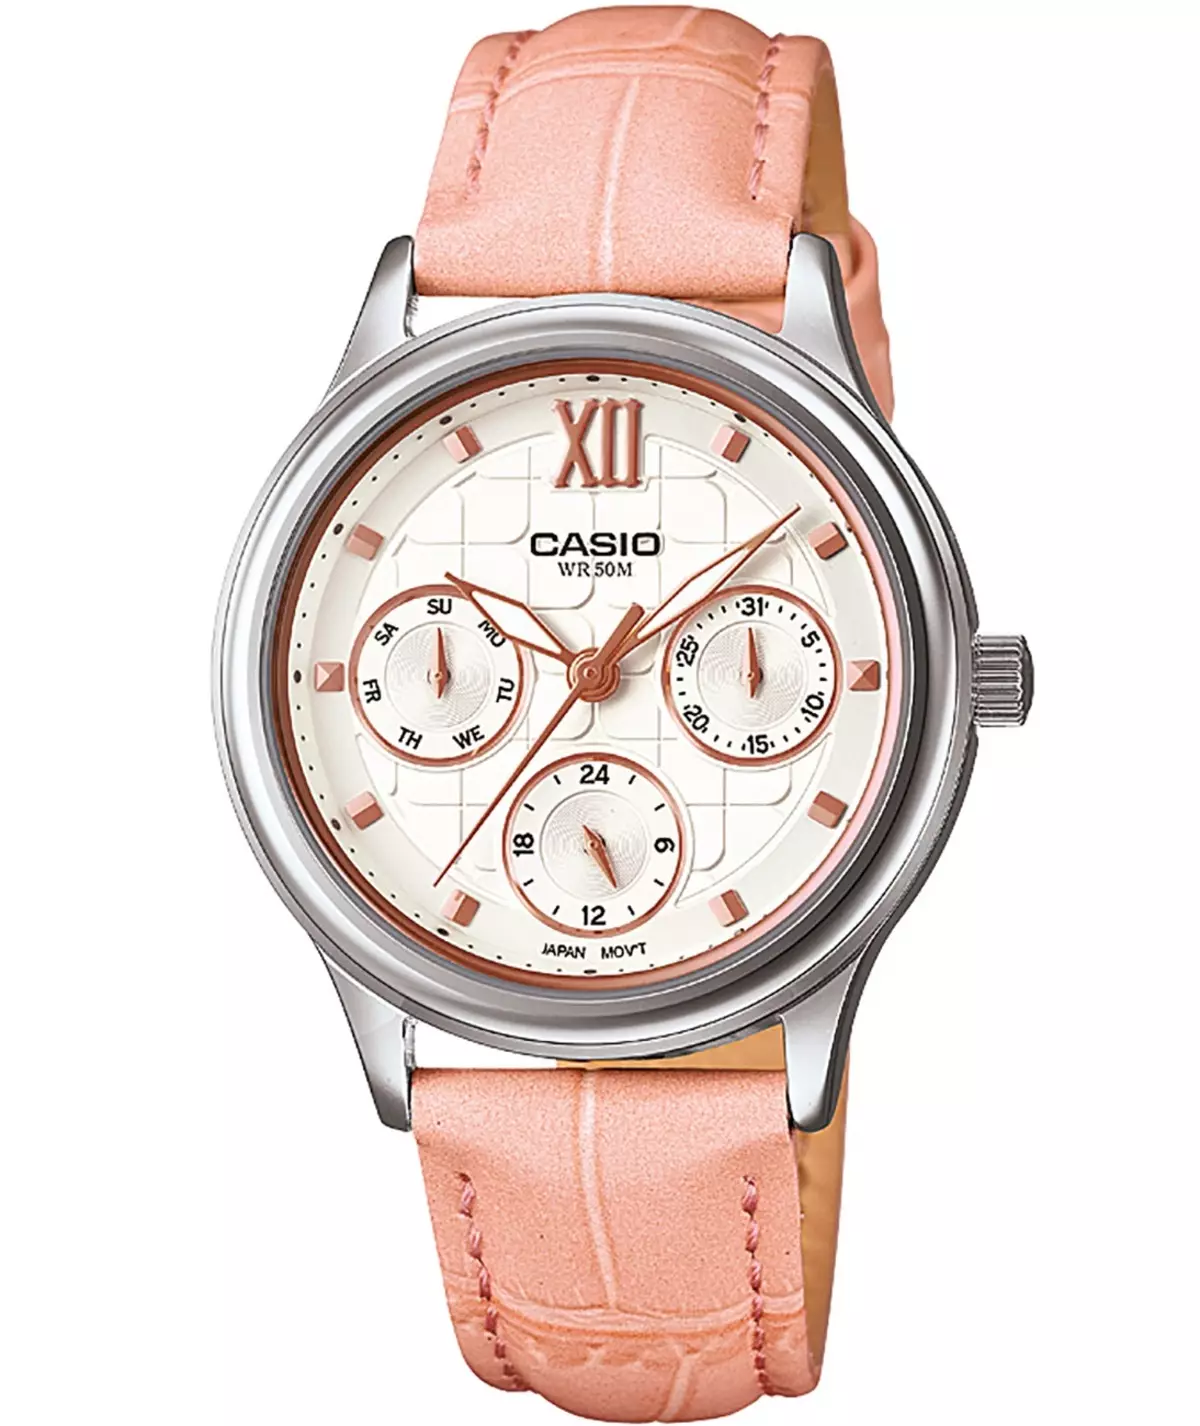 Γυναικεία Wristwatches Casio (107 φωτογραφίες): G-Shock, Edifice και Protrek, ιμάντα, έξυπνα και ηλεκτρονικά μοντέλα, πώς να συντομεύσετε το βραχιόλι 3554_76